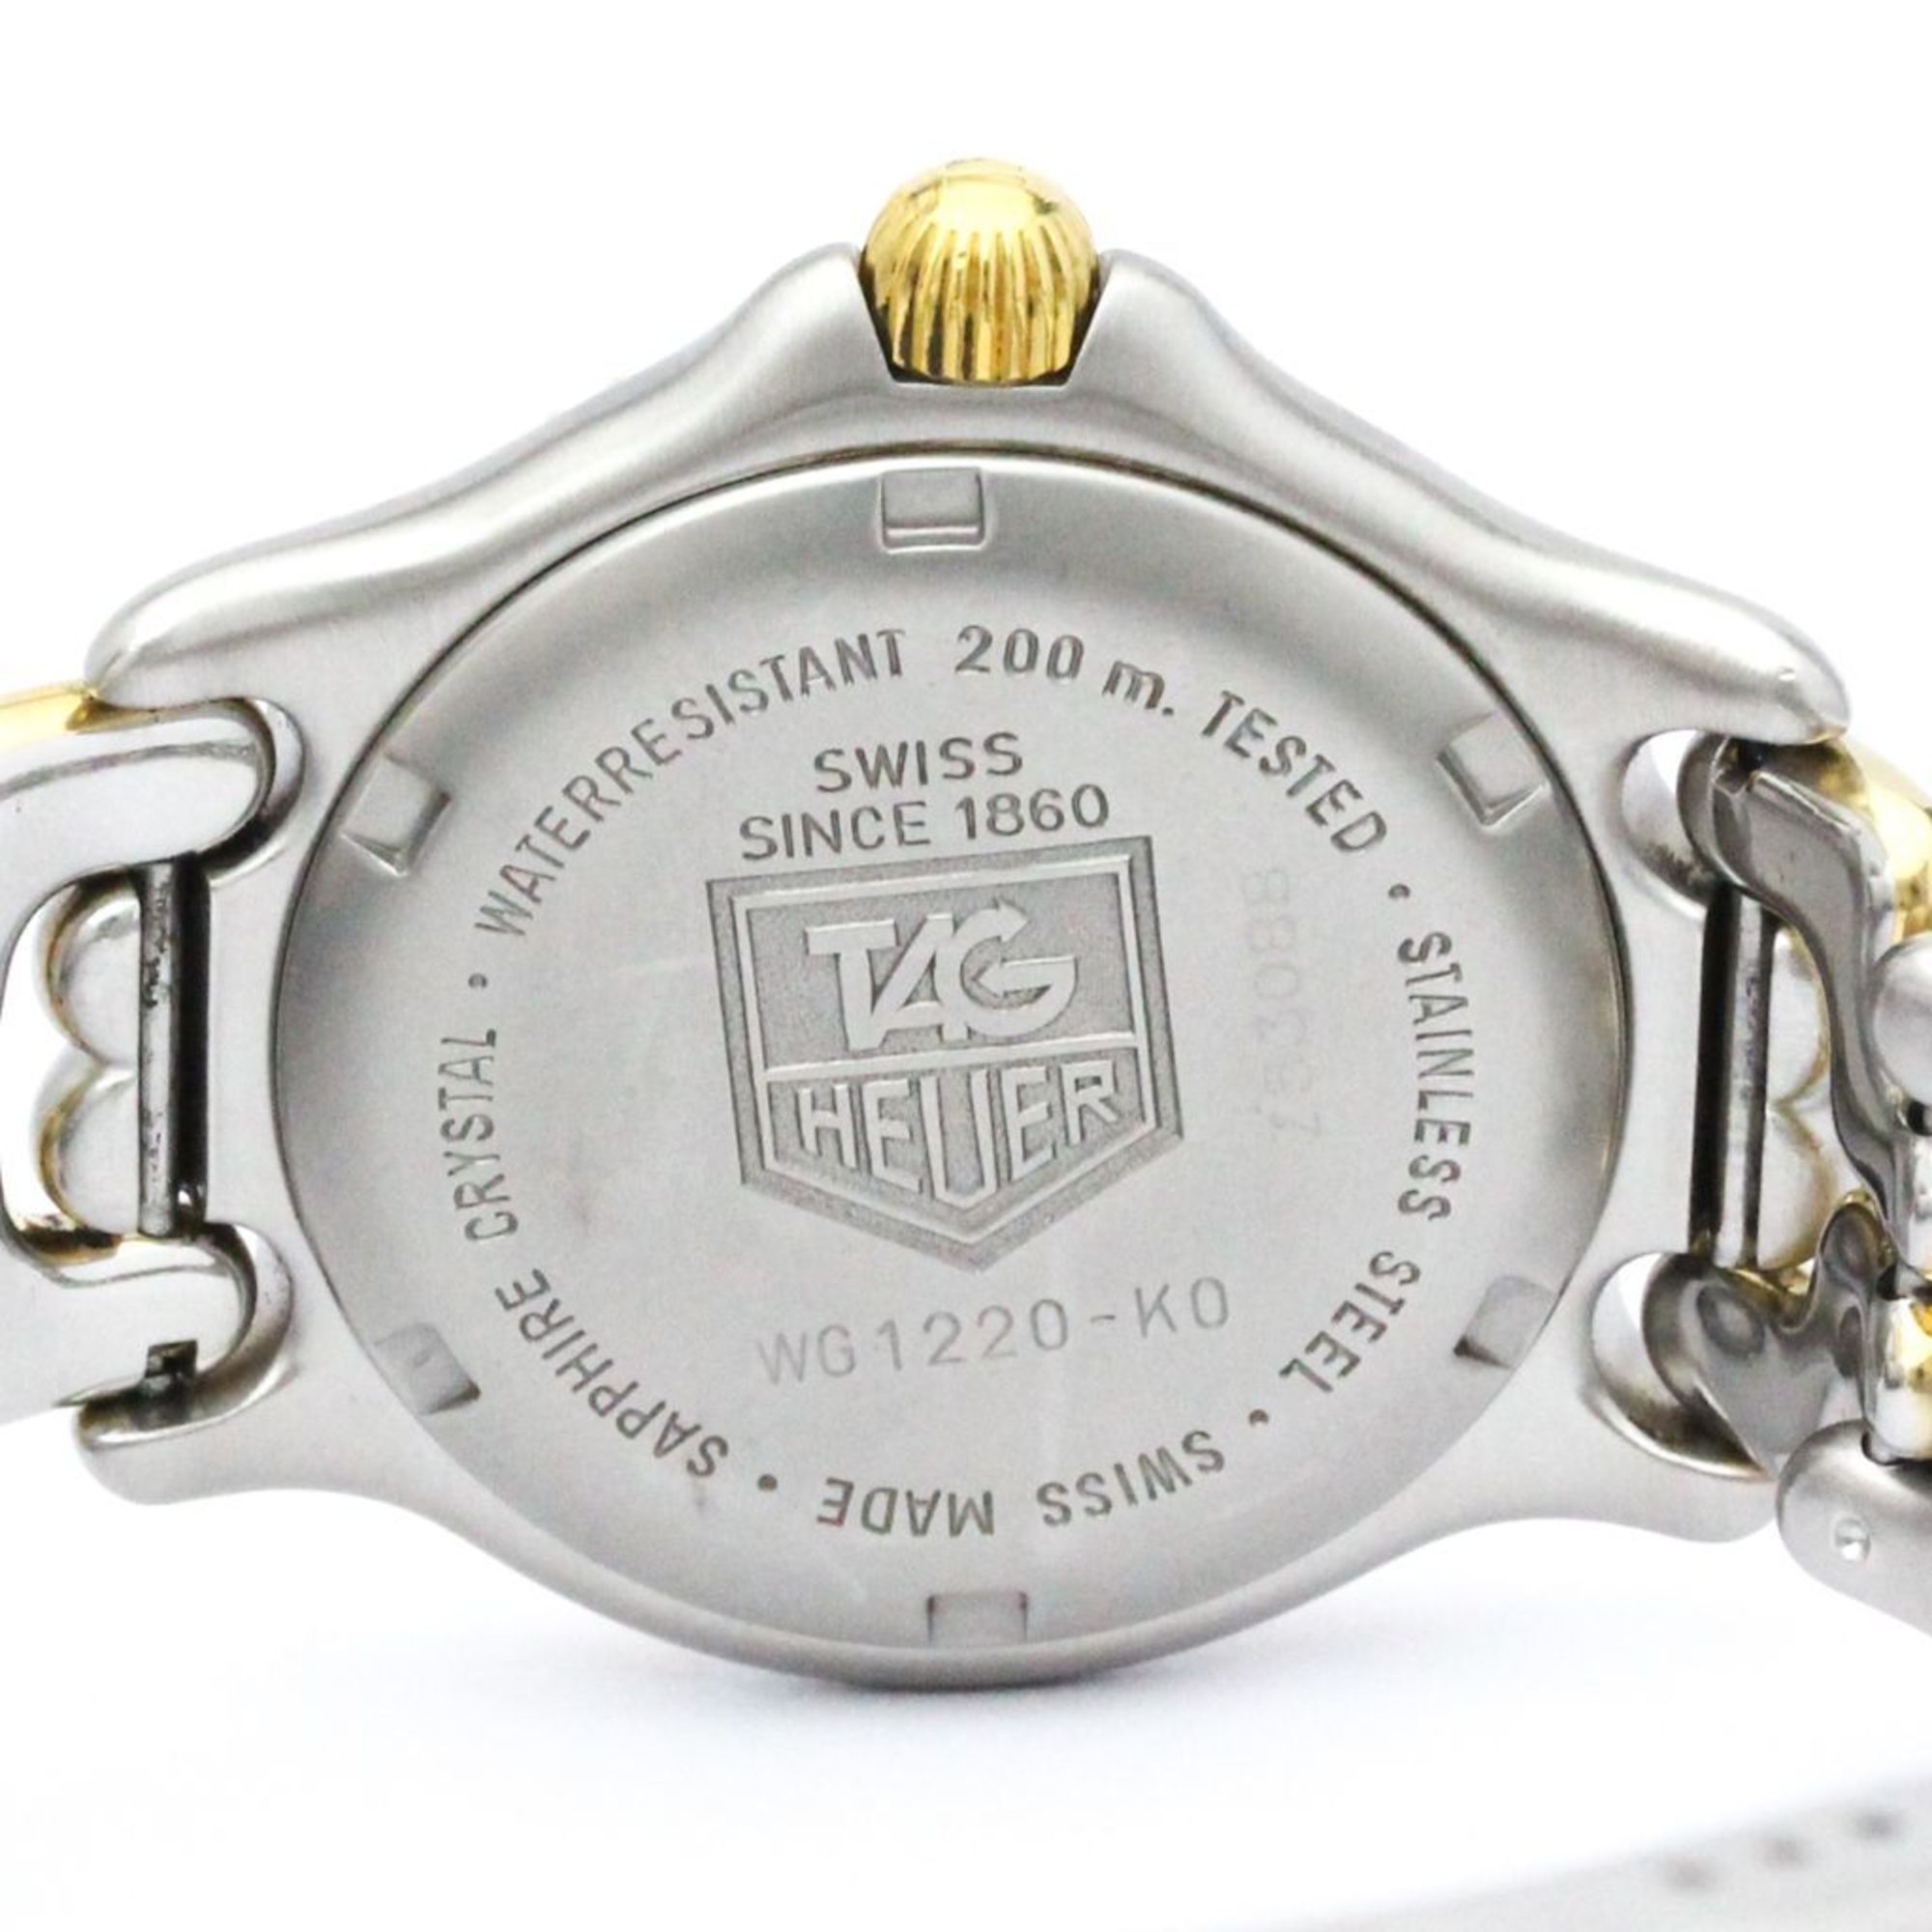 タグホイヤー (TAG HEUER) セル プロフェッショナル 200M ゴールド 